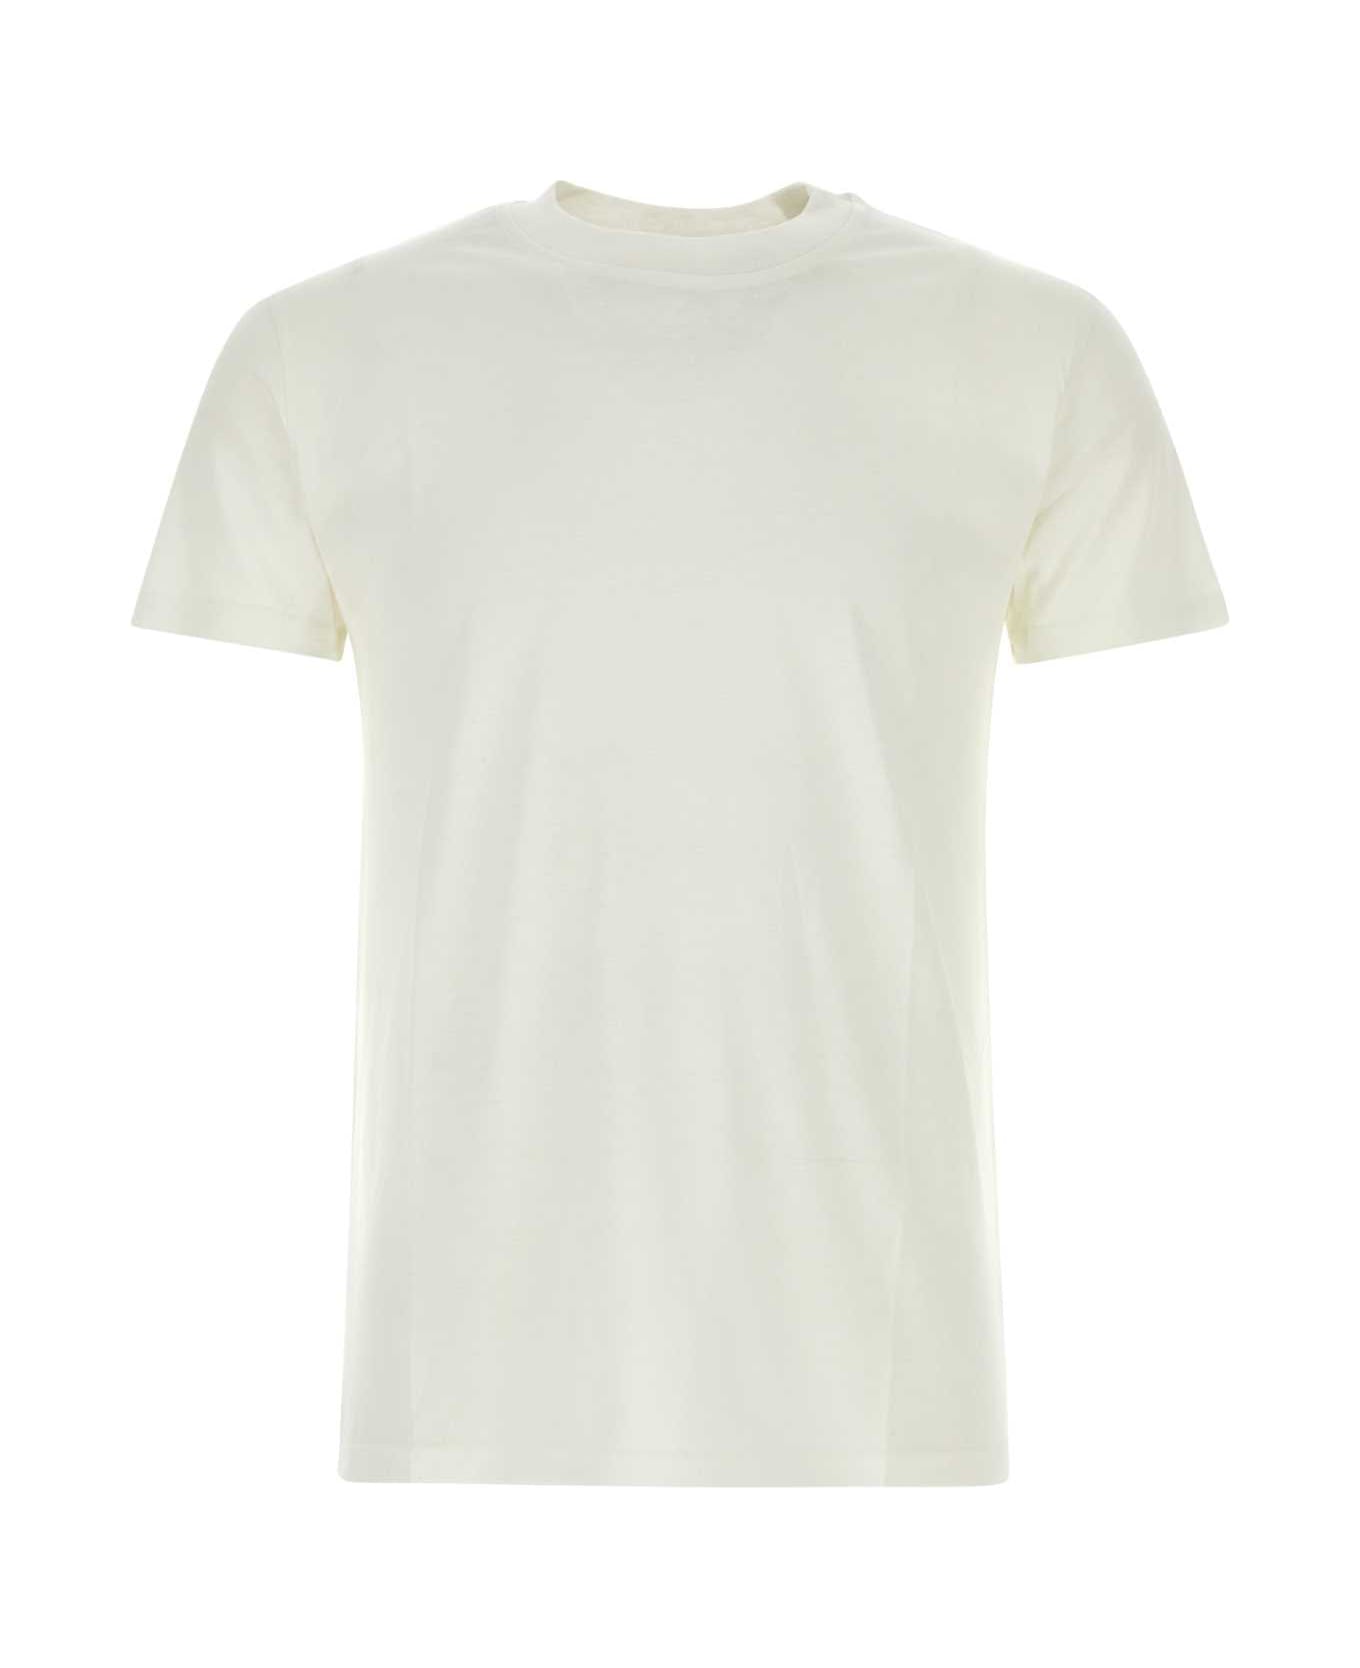 PT Torino White Silk Blend T-shirt - BIANCO